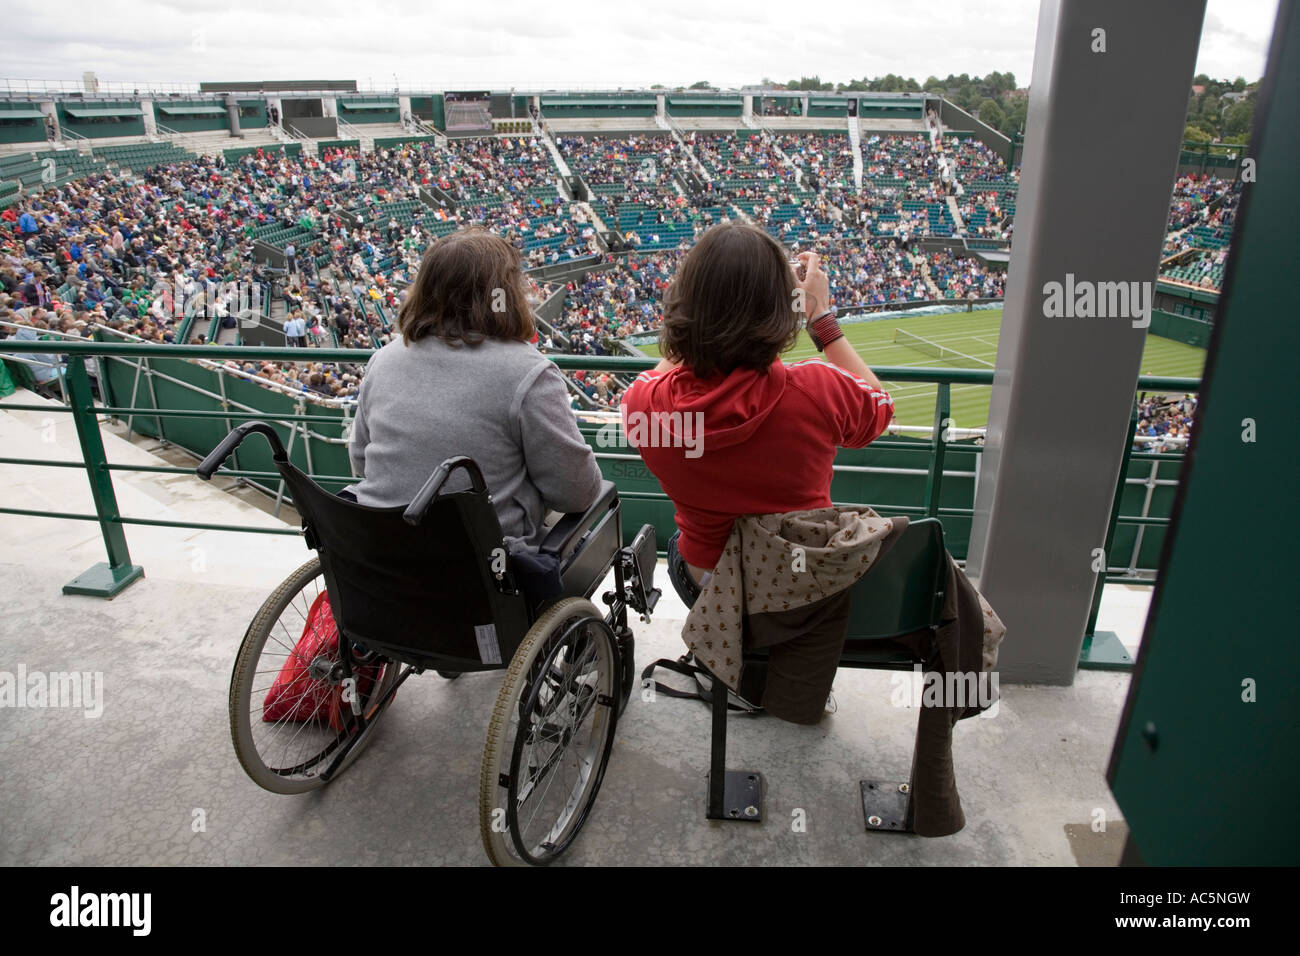 Mujer usuario de silla de ruedas y acompañante (tomando una fotografía) en el Campeonato de tenis de Wimbledon. En el Reino Unido. Foto de stock